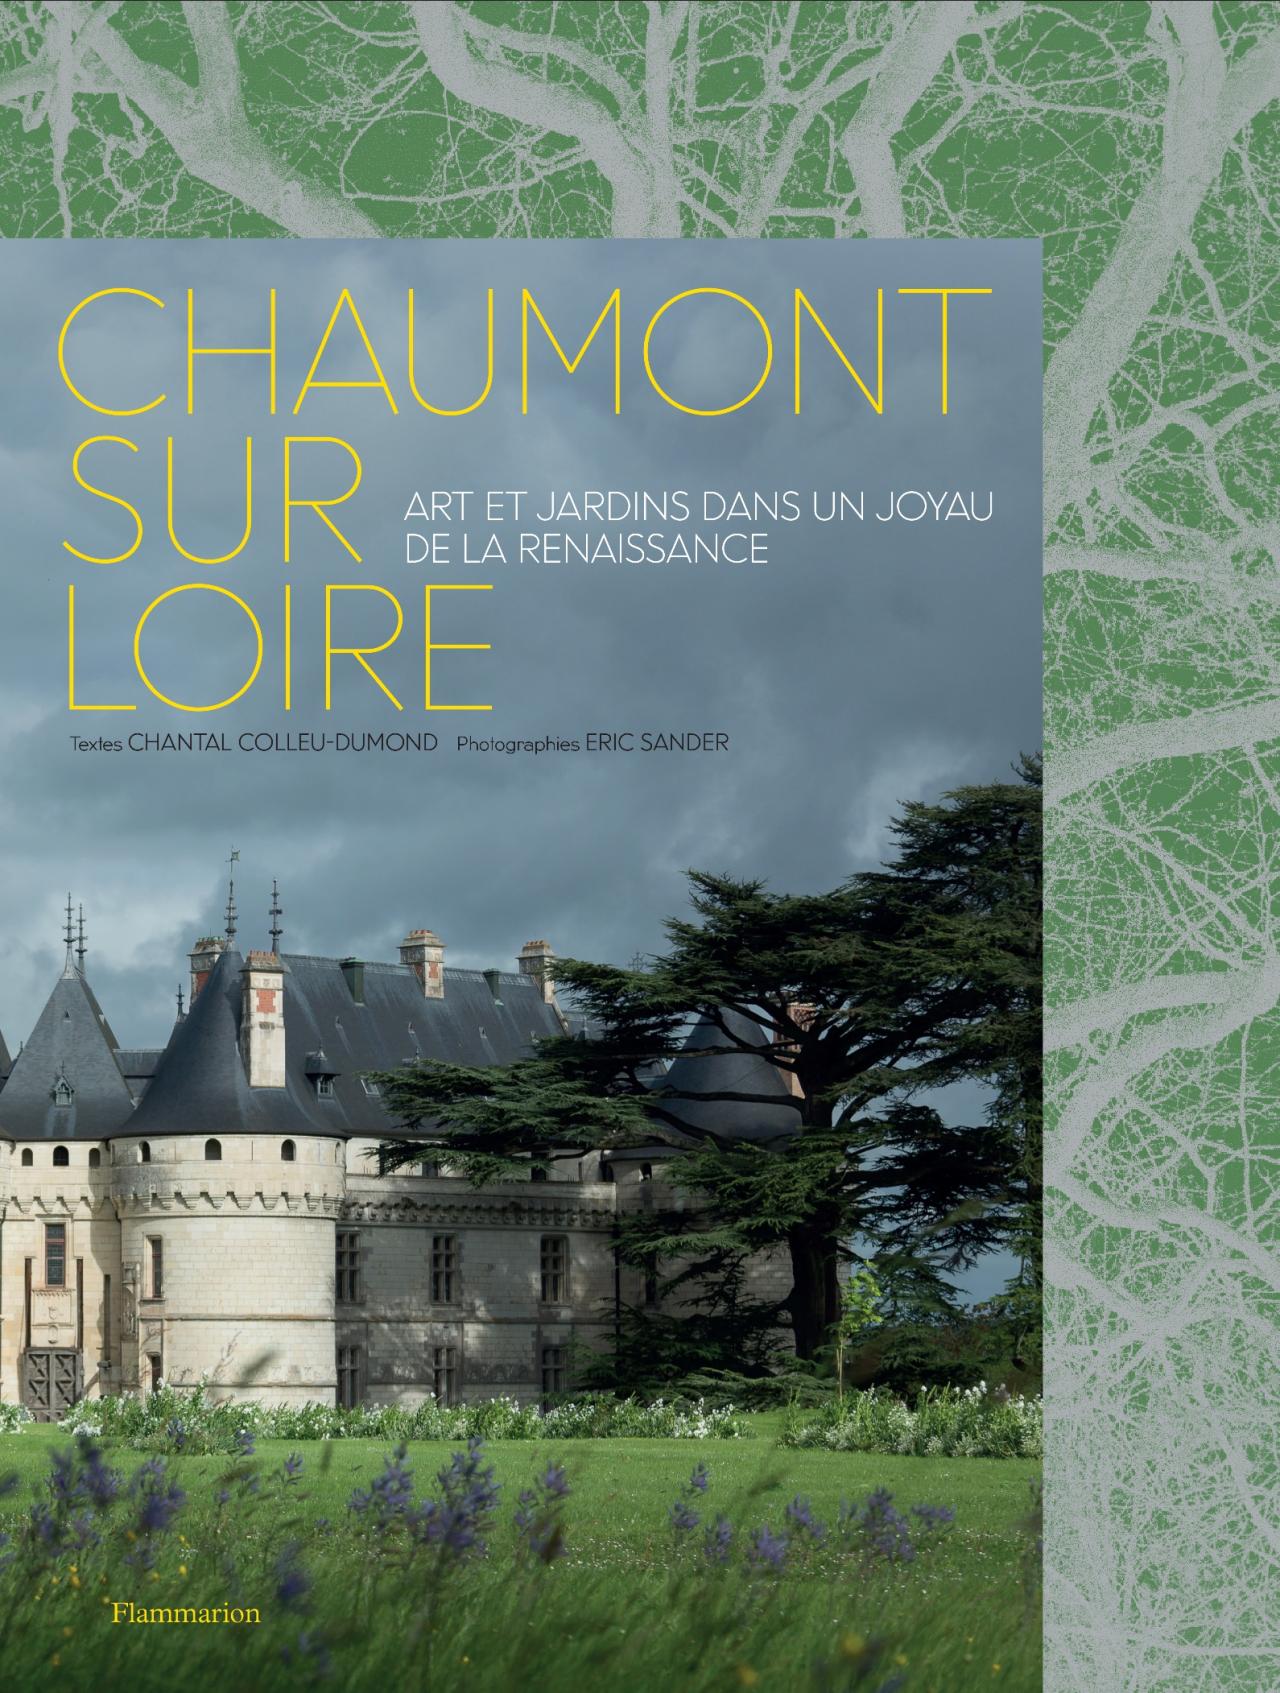 Château de Chaumont-sur-Loire, Art et jardins dans un joyau de la Renaissance